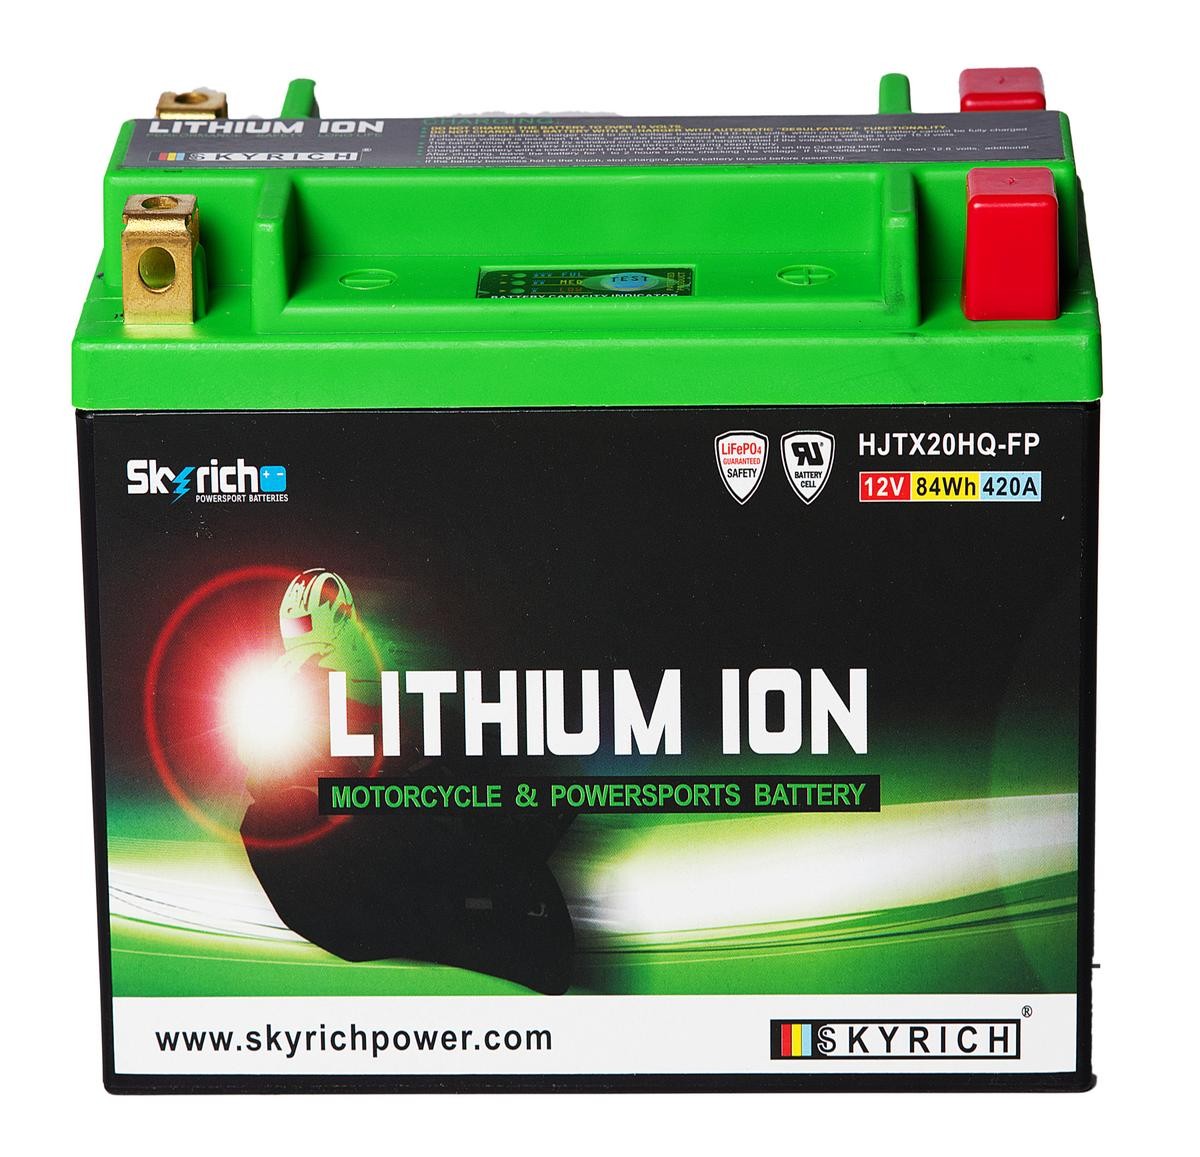 HARLEY-DAVIDSON SUPER GLIDE Batterie 12V 7Ah 420A N Li-Ionen-Batterie SKYRICH LITHIUM ION HJTX20HQ-FP